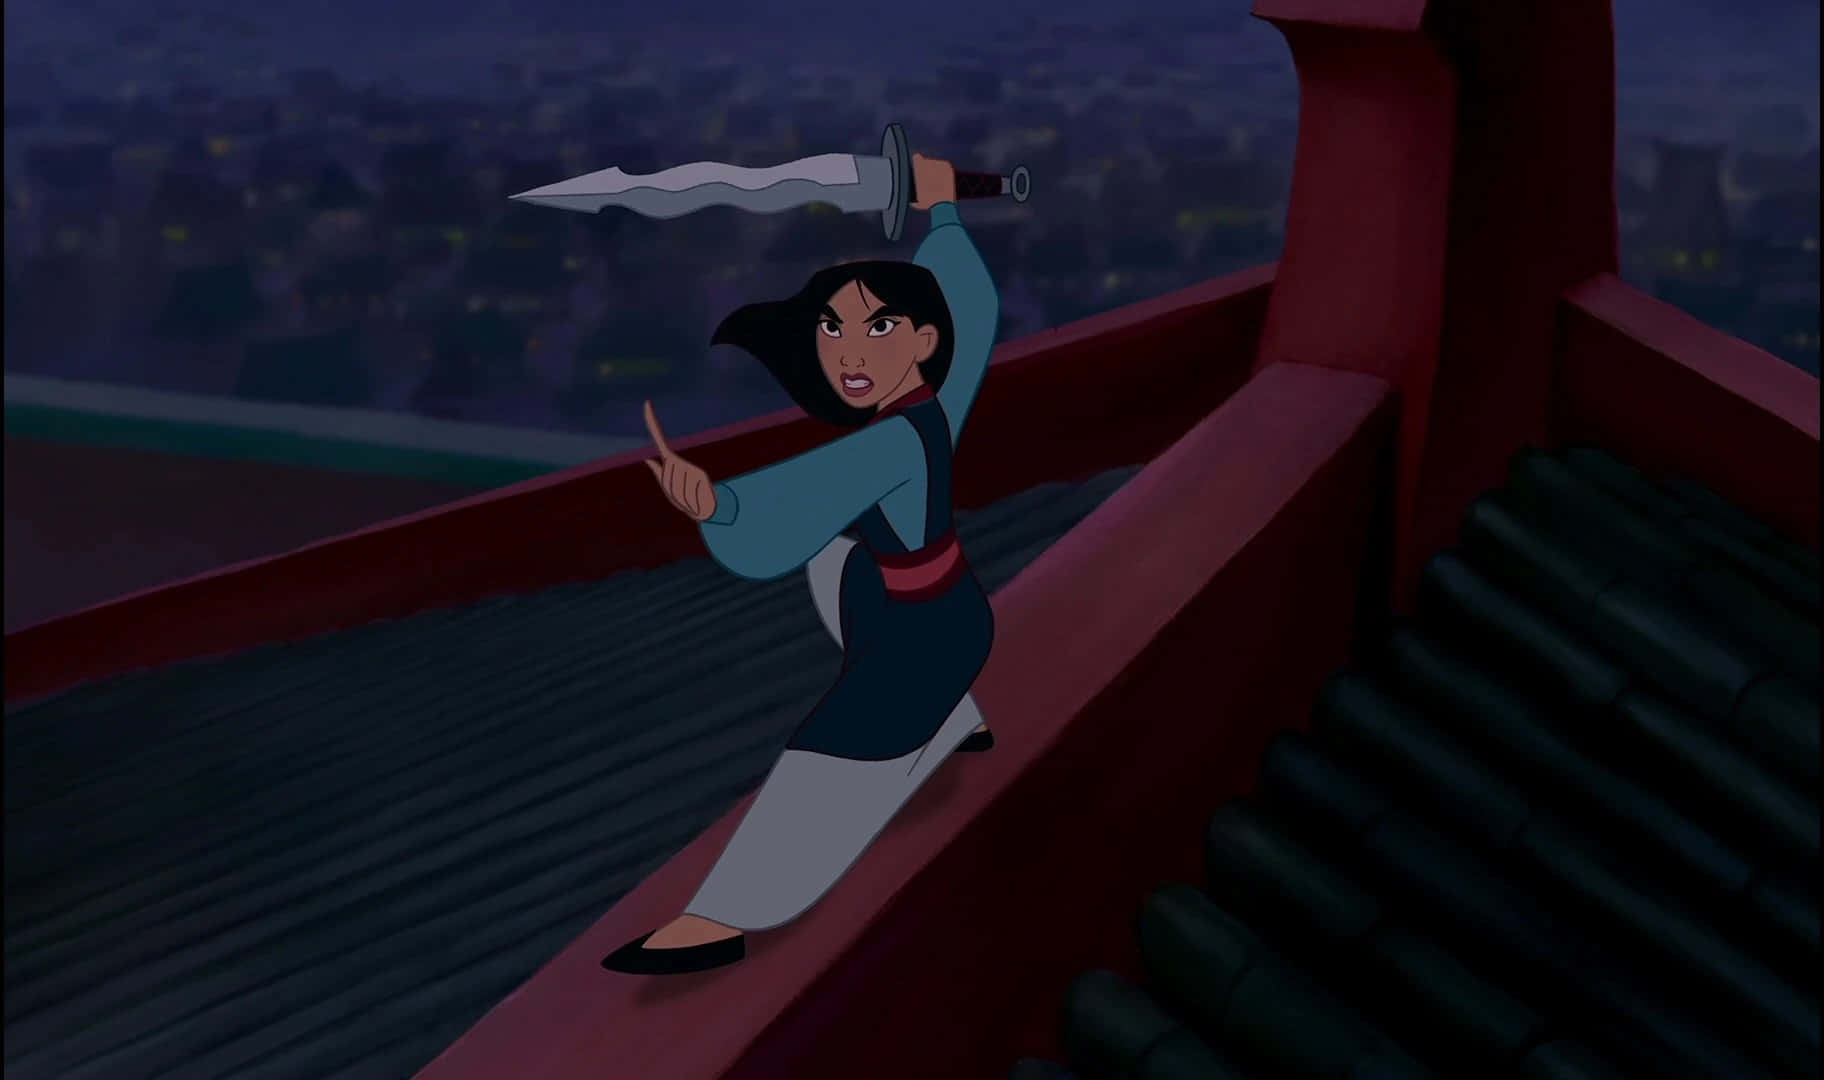 Disneylegende, Mulan